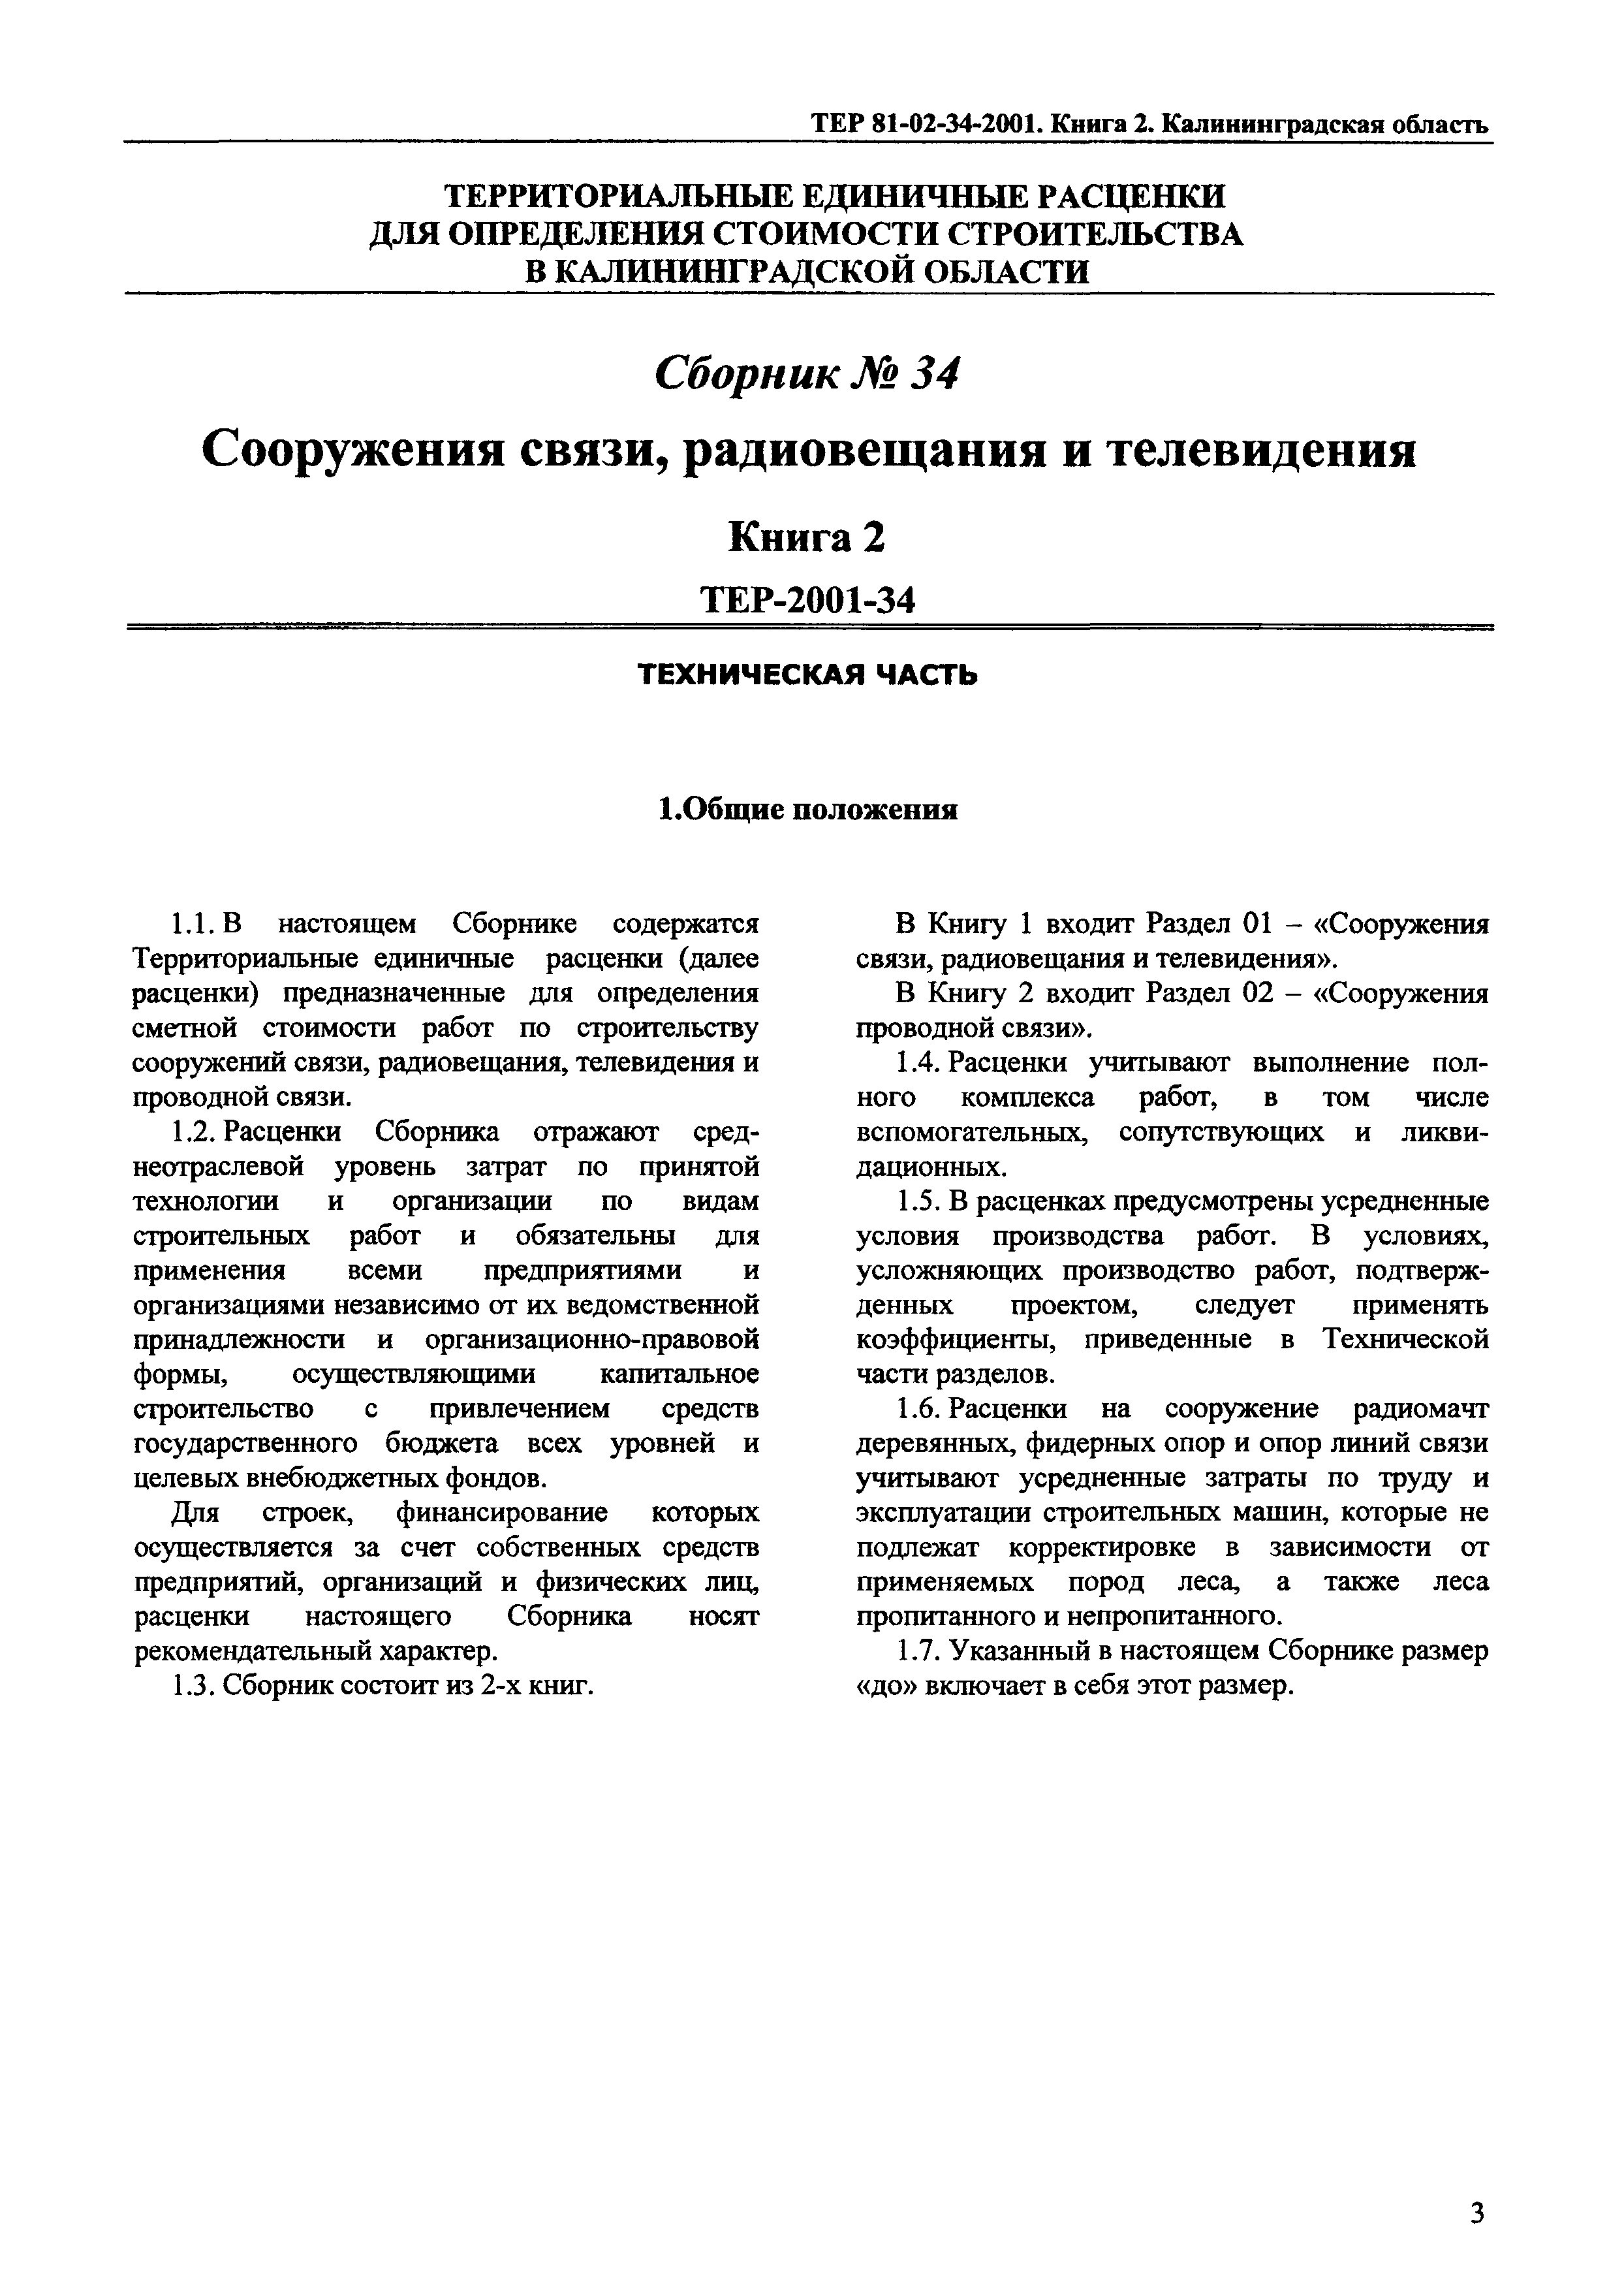 ТЕР Калининградская область 2001-34